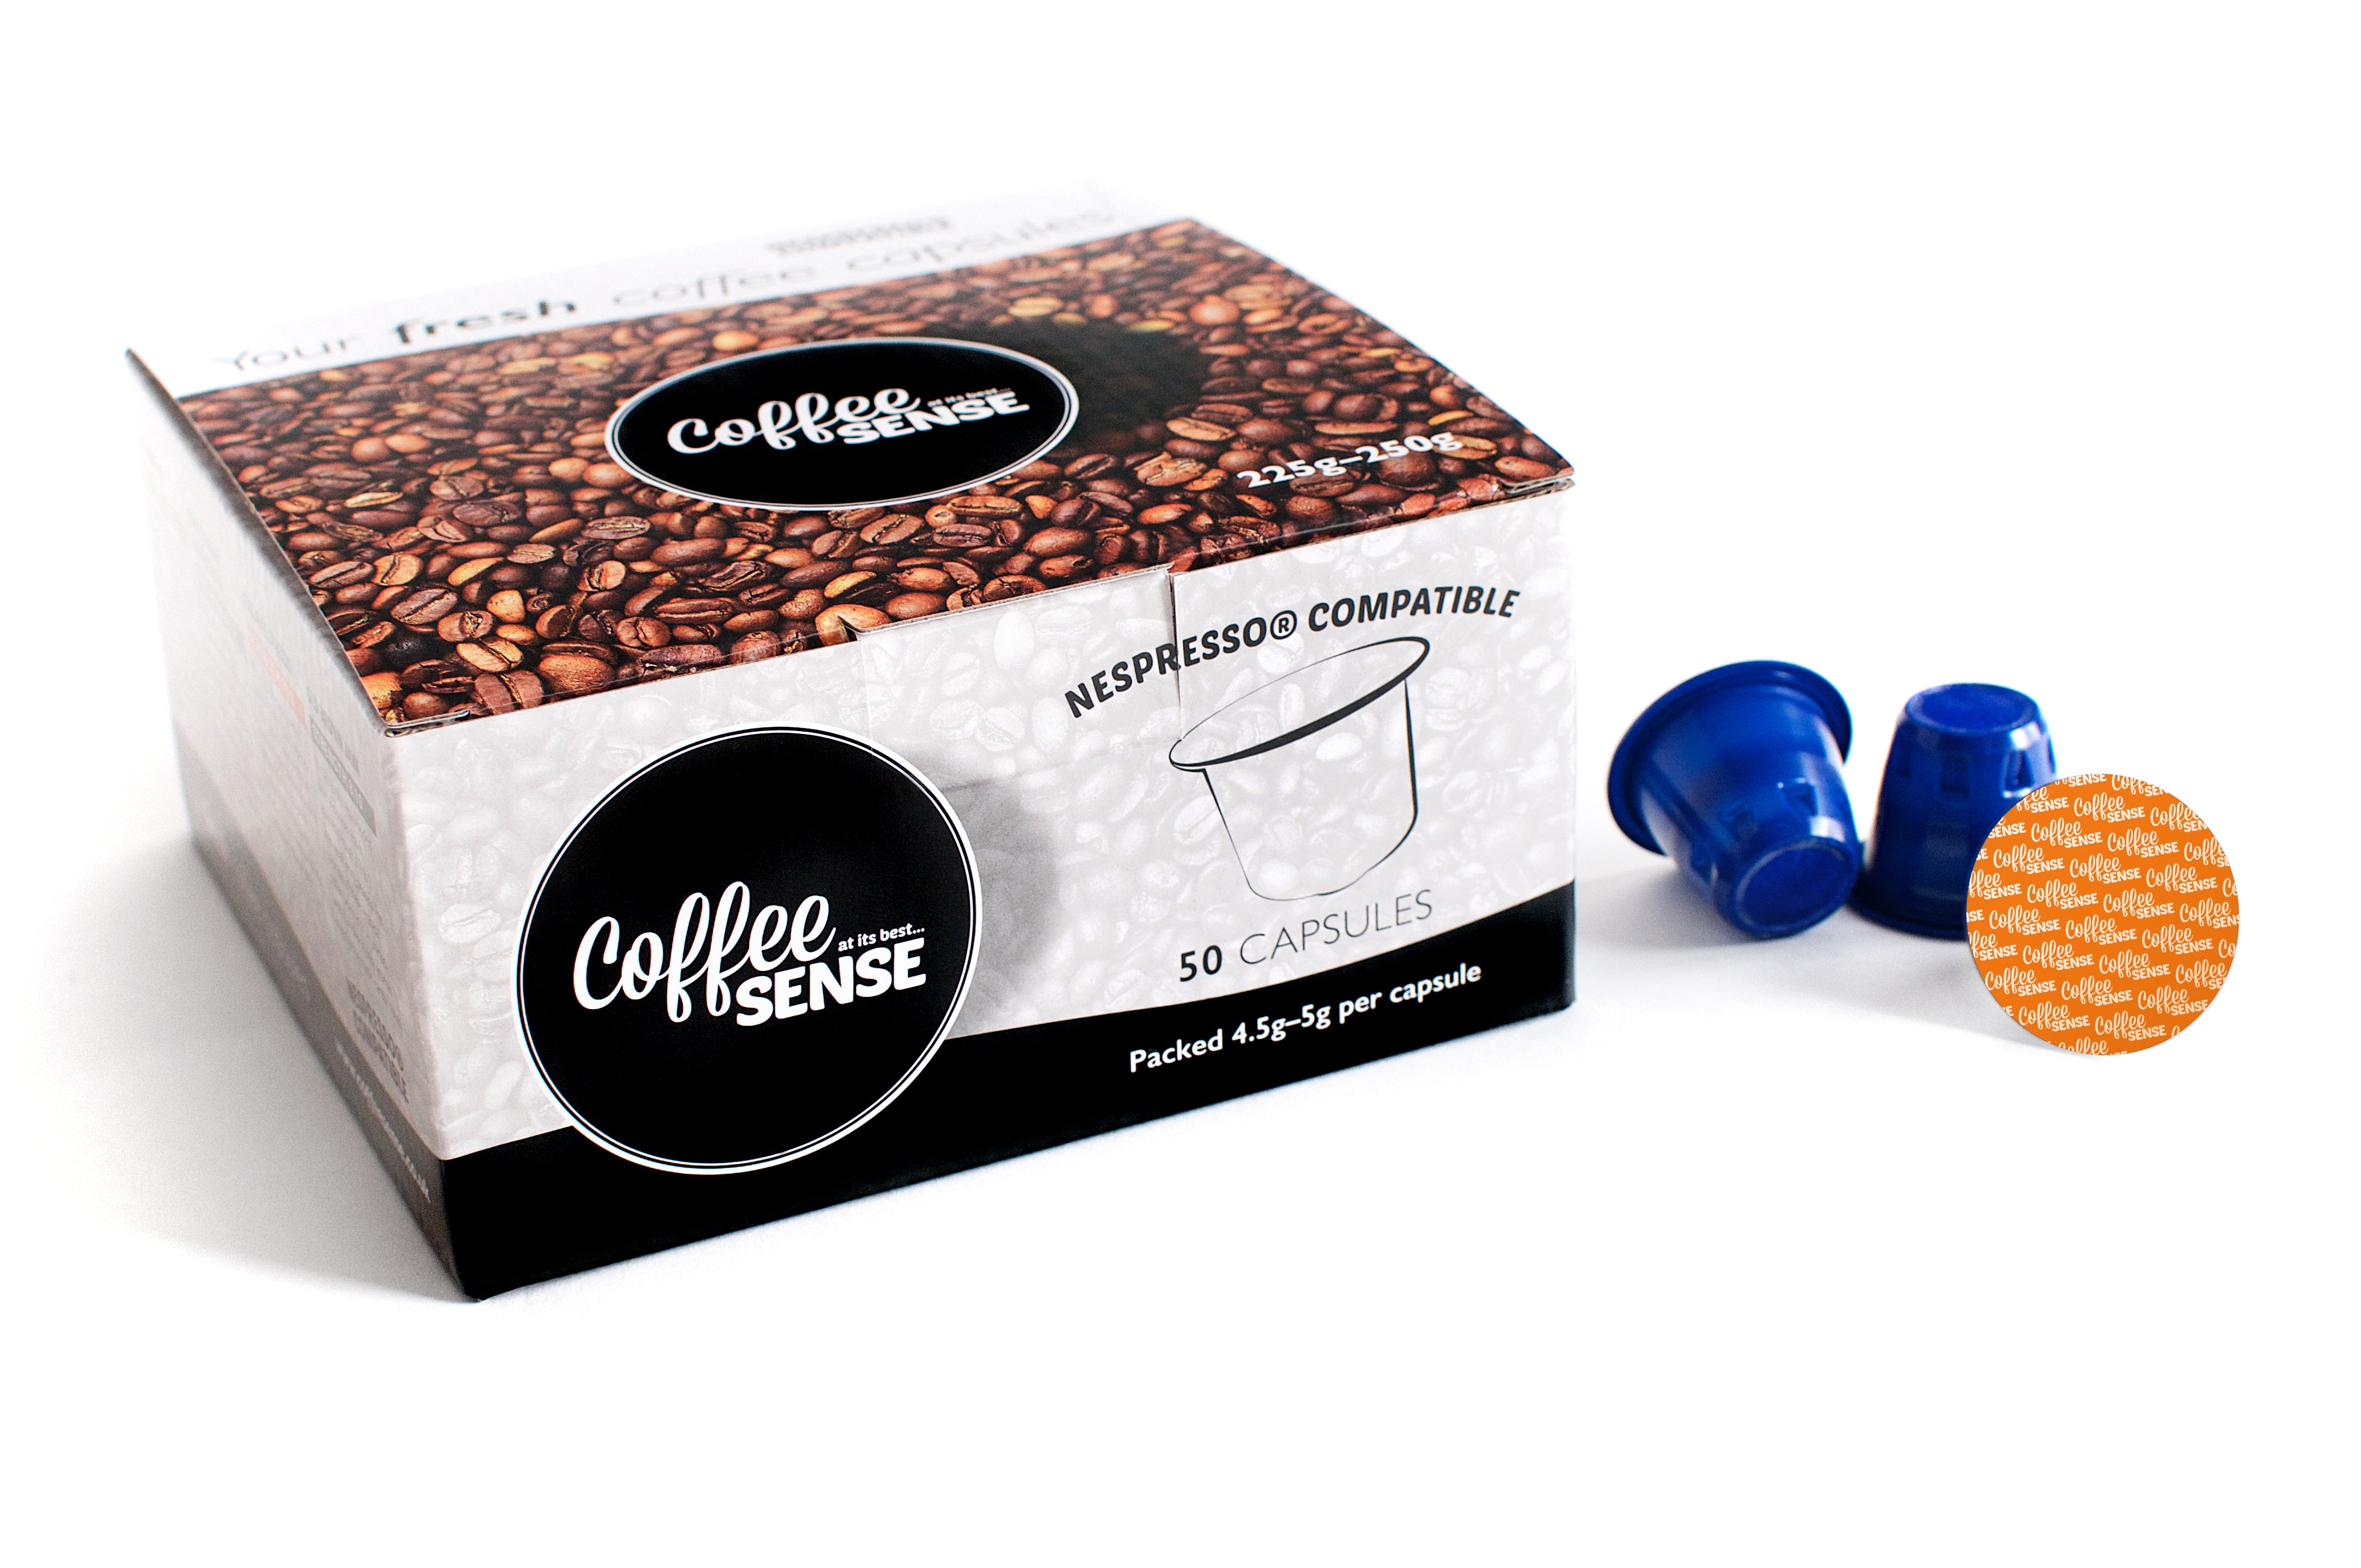 Nespresso Compatible Italian Pods box of 50